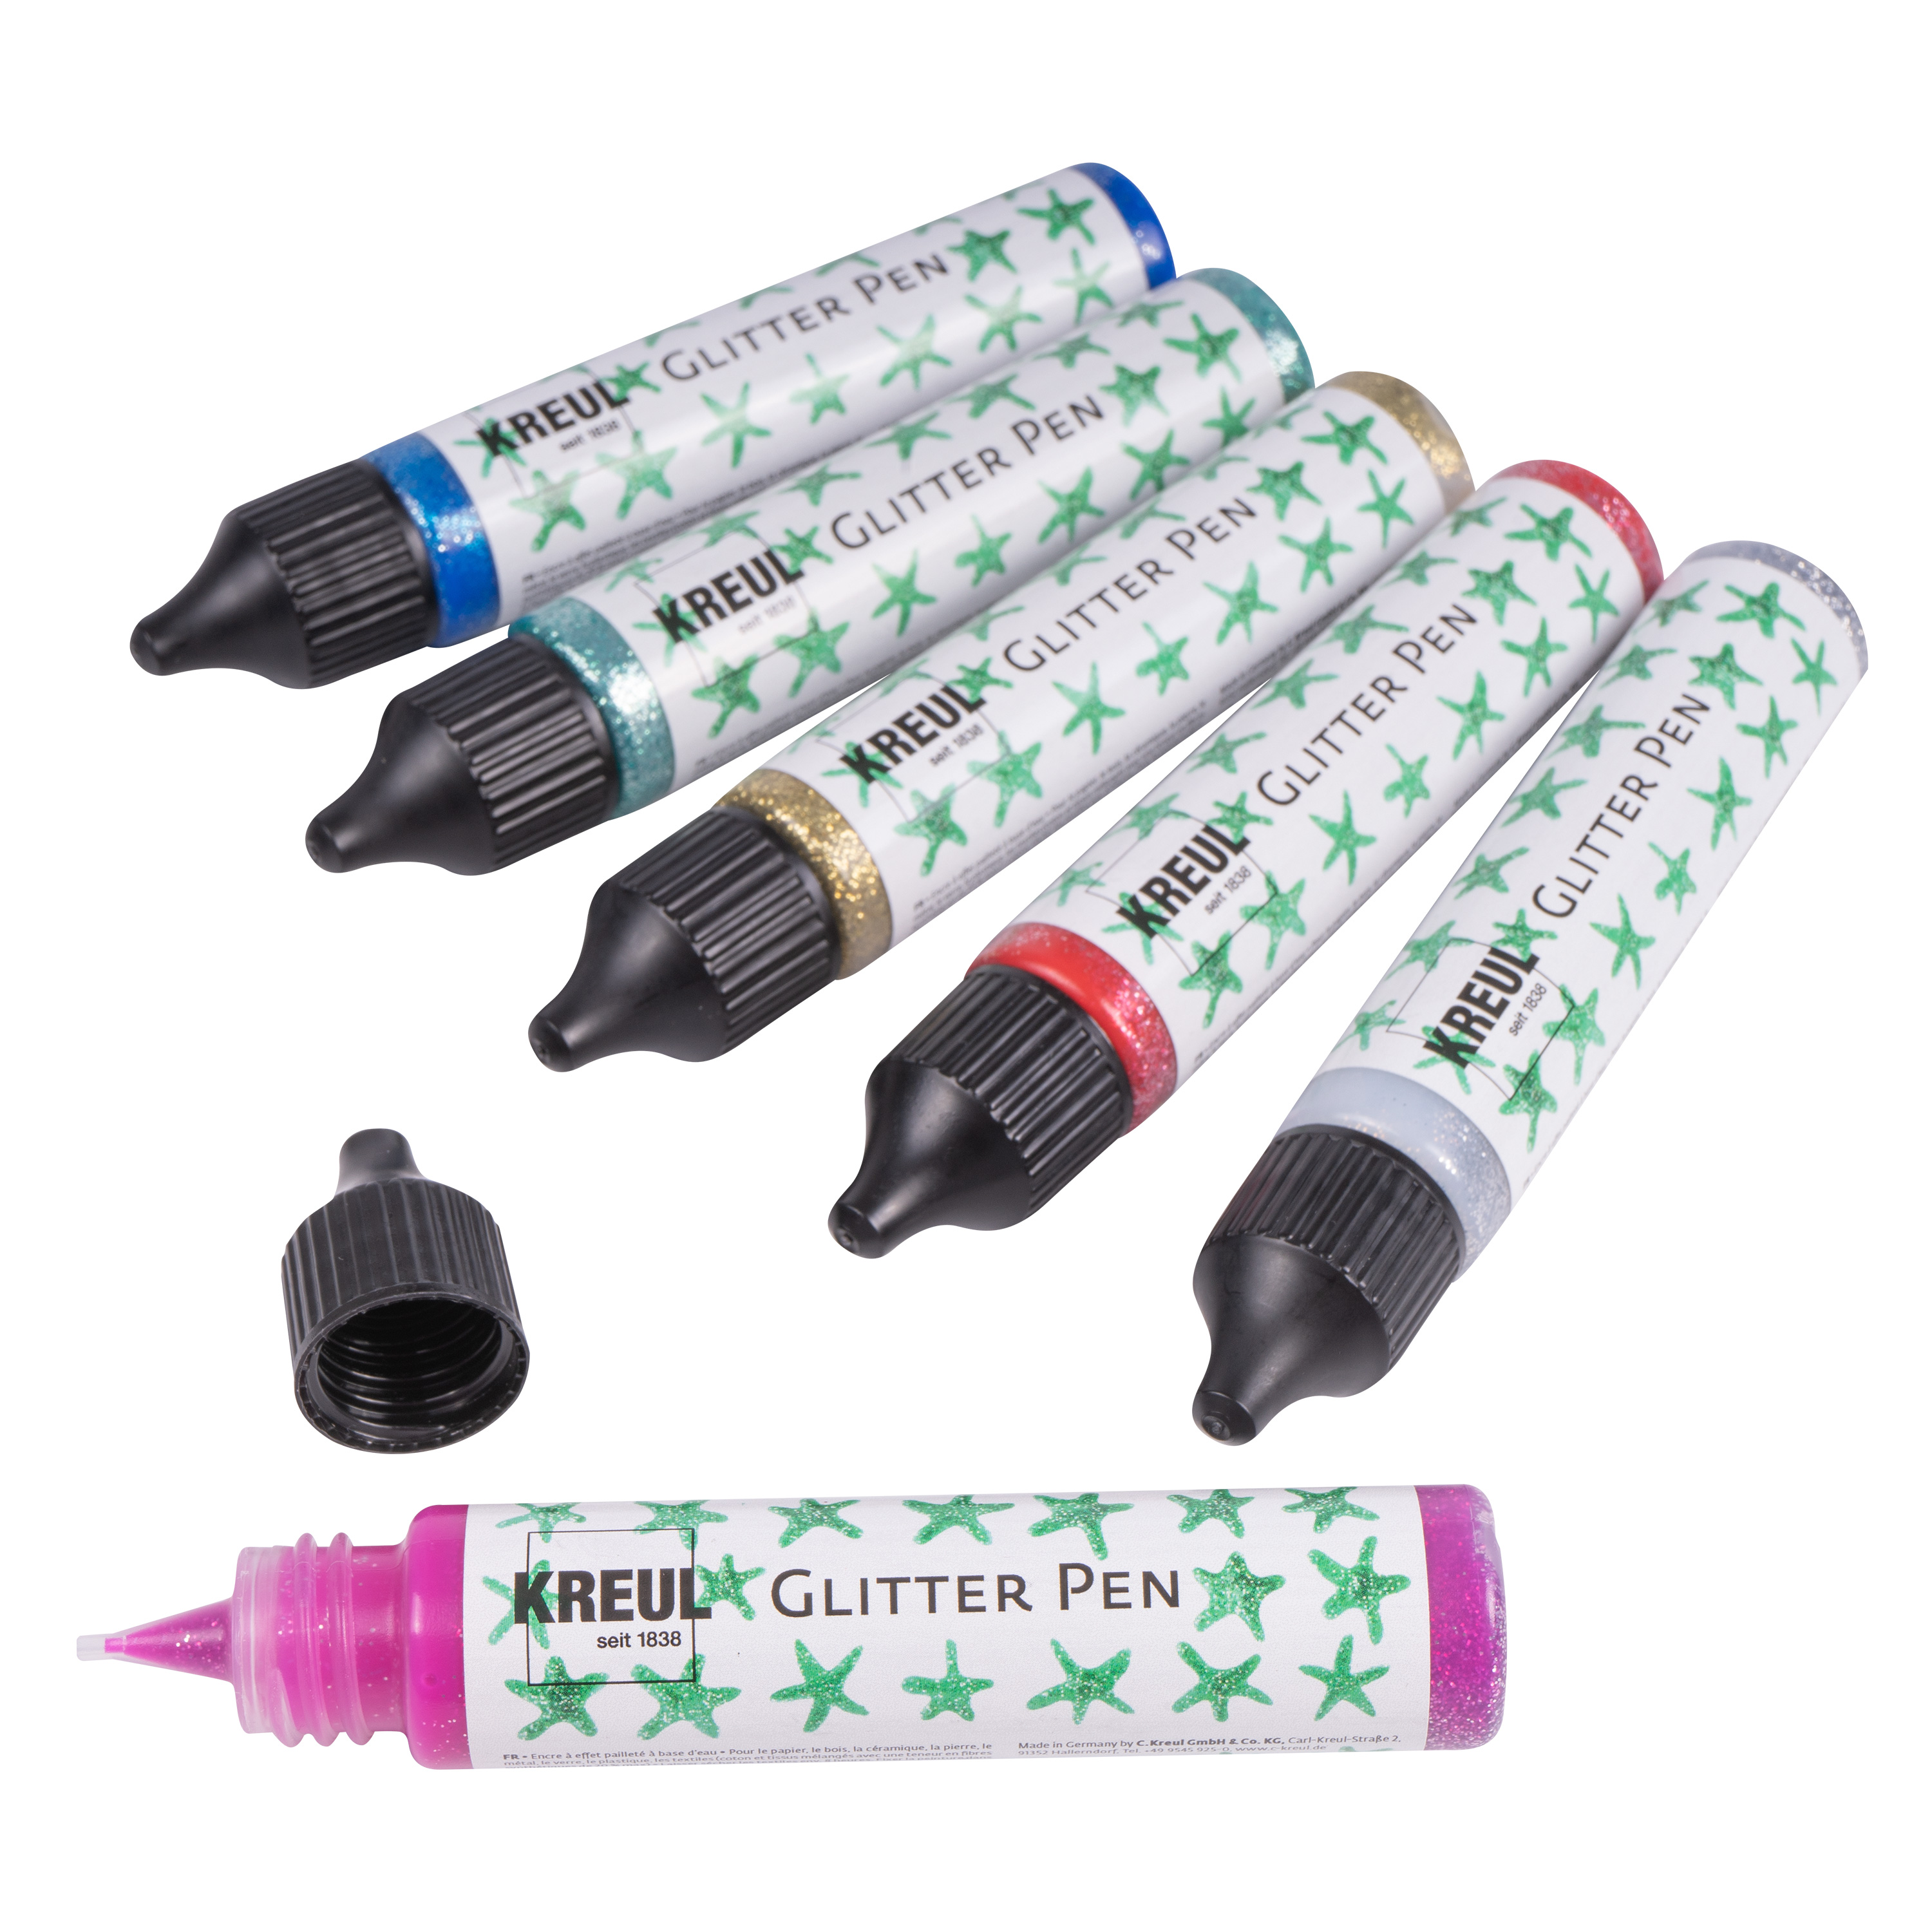 KREUL Glitter Pen, je 29 ml, 6er-Set